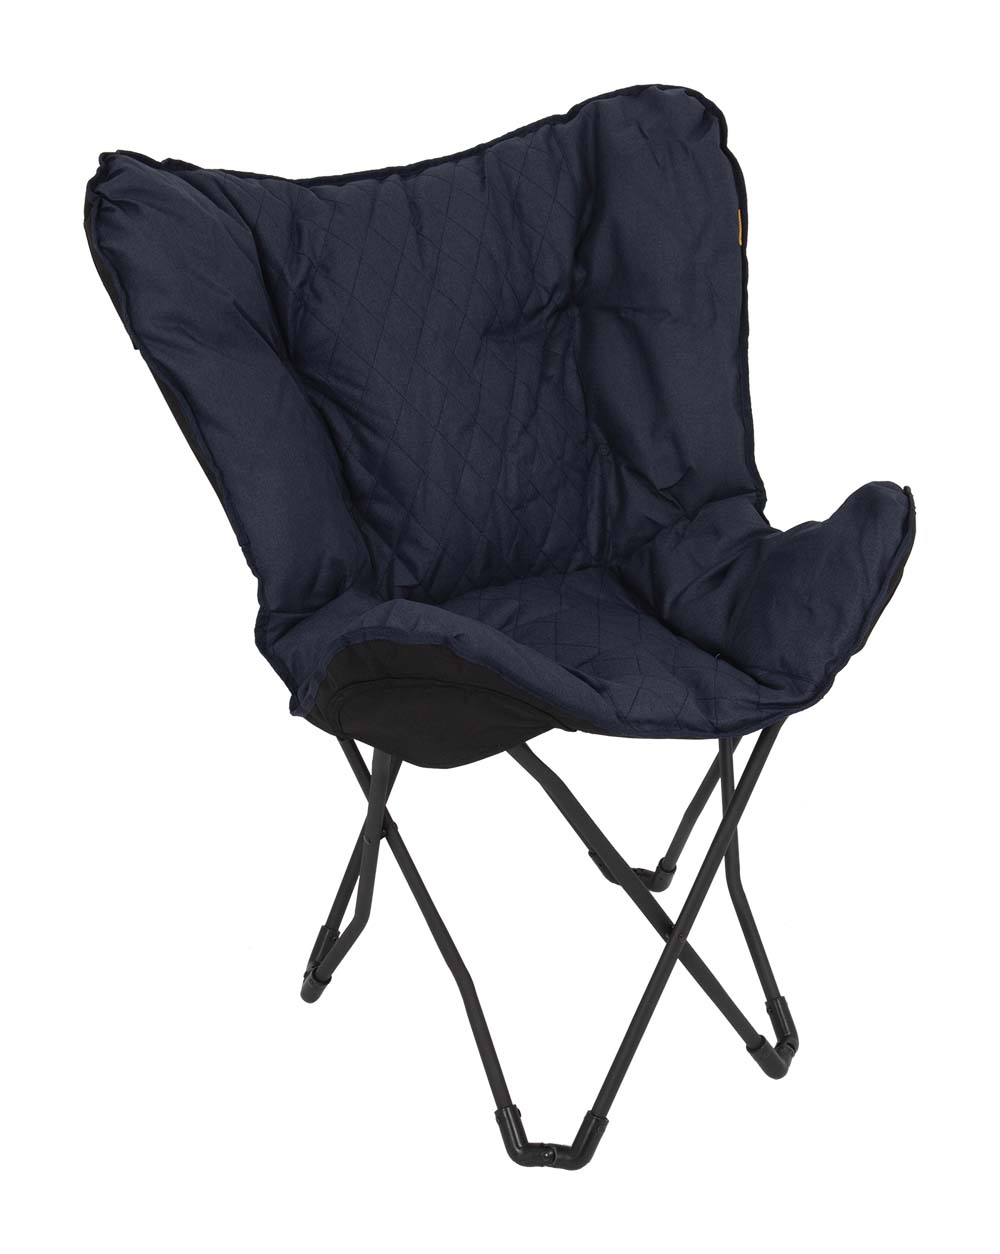 1200330 "Der Schmetterlingsstuhl ist ein """"Must Have"""". Dieser luxuriöse Stuhl hat ein genähtes Muster. Sehr bequem durch den gepolsterten Cationic-Stoff und die breite und tiefe Sitzfläche. Der Stahlrahmen lässt sich leicht zusammenklappen, so dass der Stuhl leicht zu transportieren ist, inklusive Tragetasche. Ein idealer Stuhl für den Garten oder beim Camping, aber auch auf dem Balkon und im Wohnzimmer."